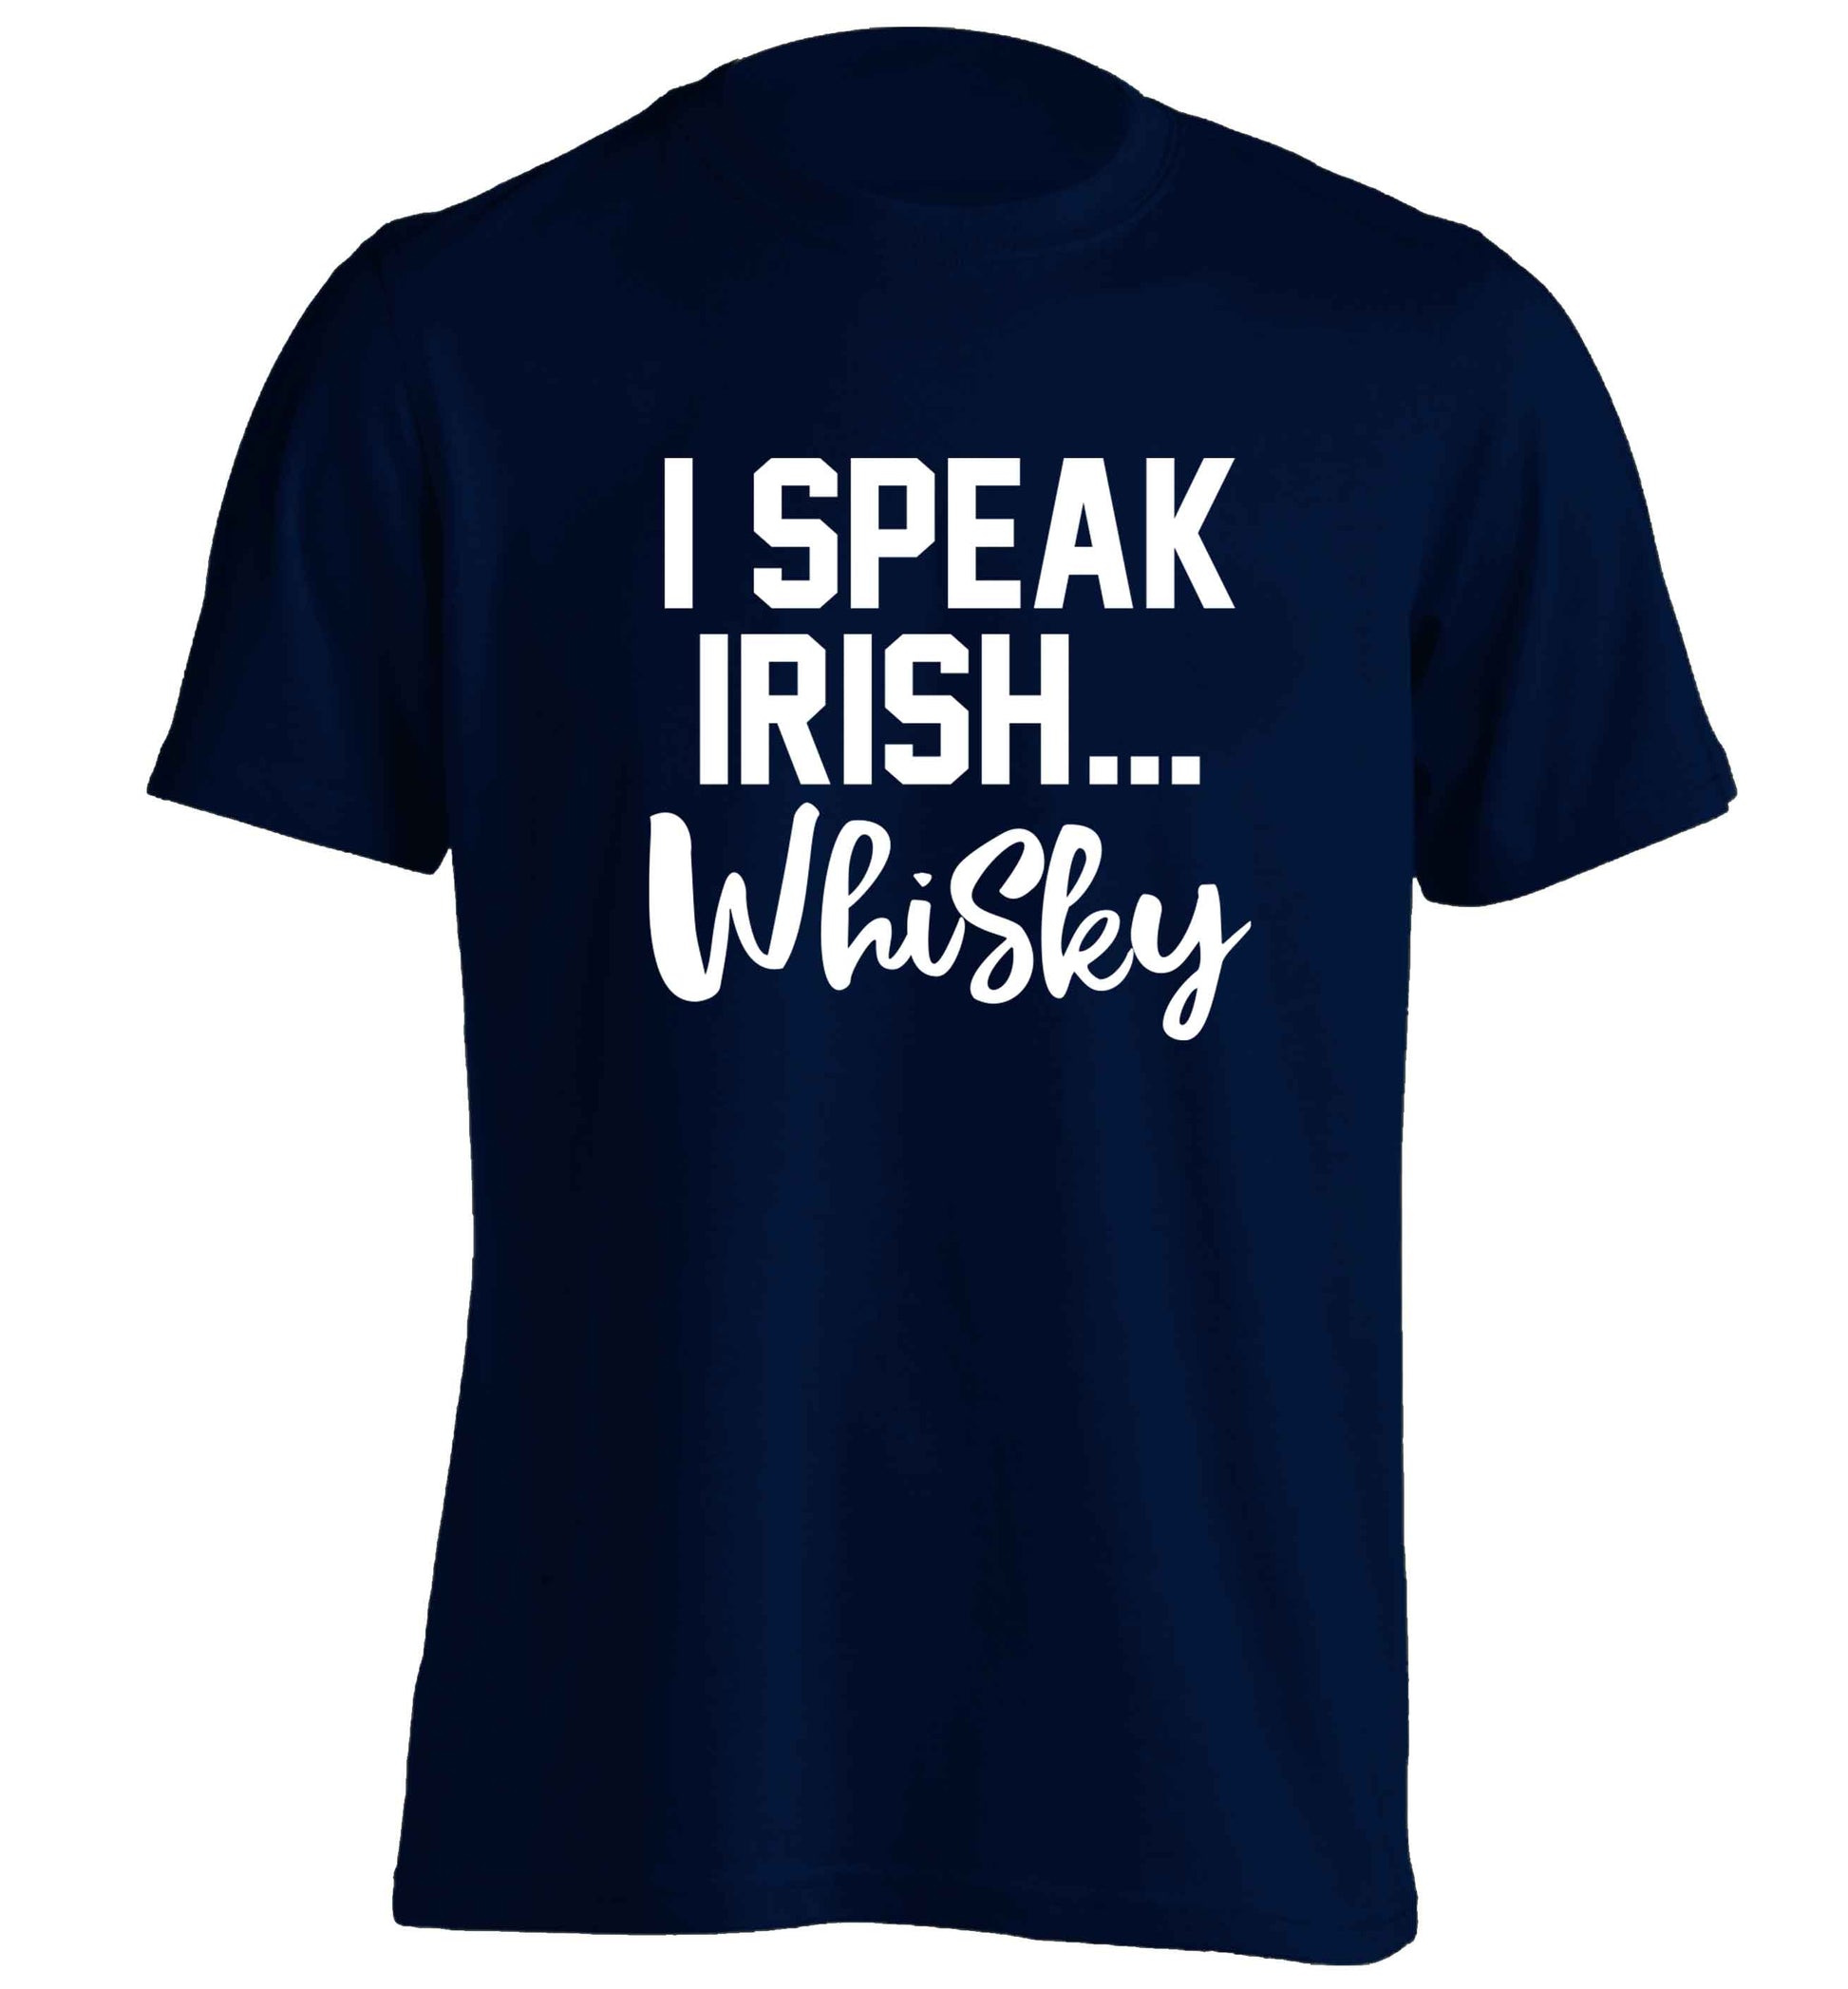 I speak Irish whisky adults unisex navy Tshirt 2XL